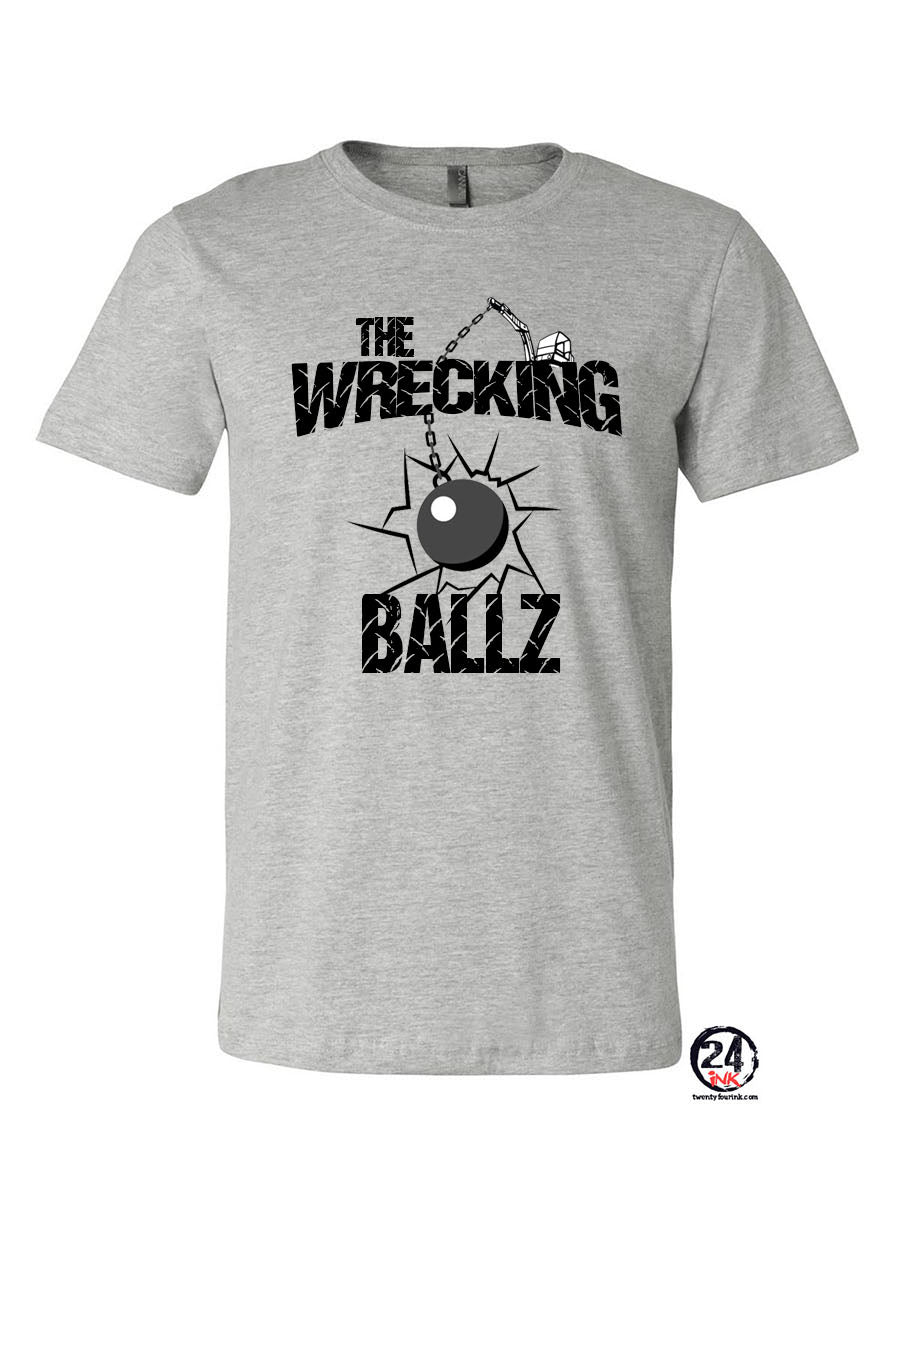 Wrecking Ballz t-shirt